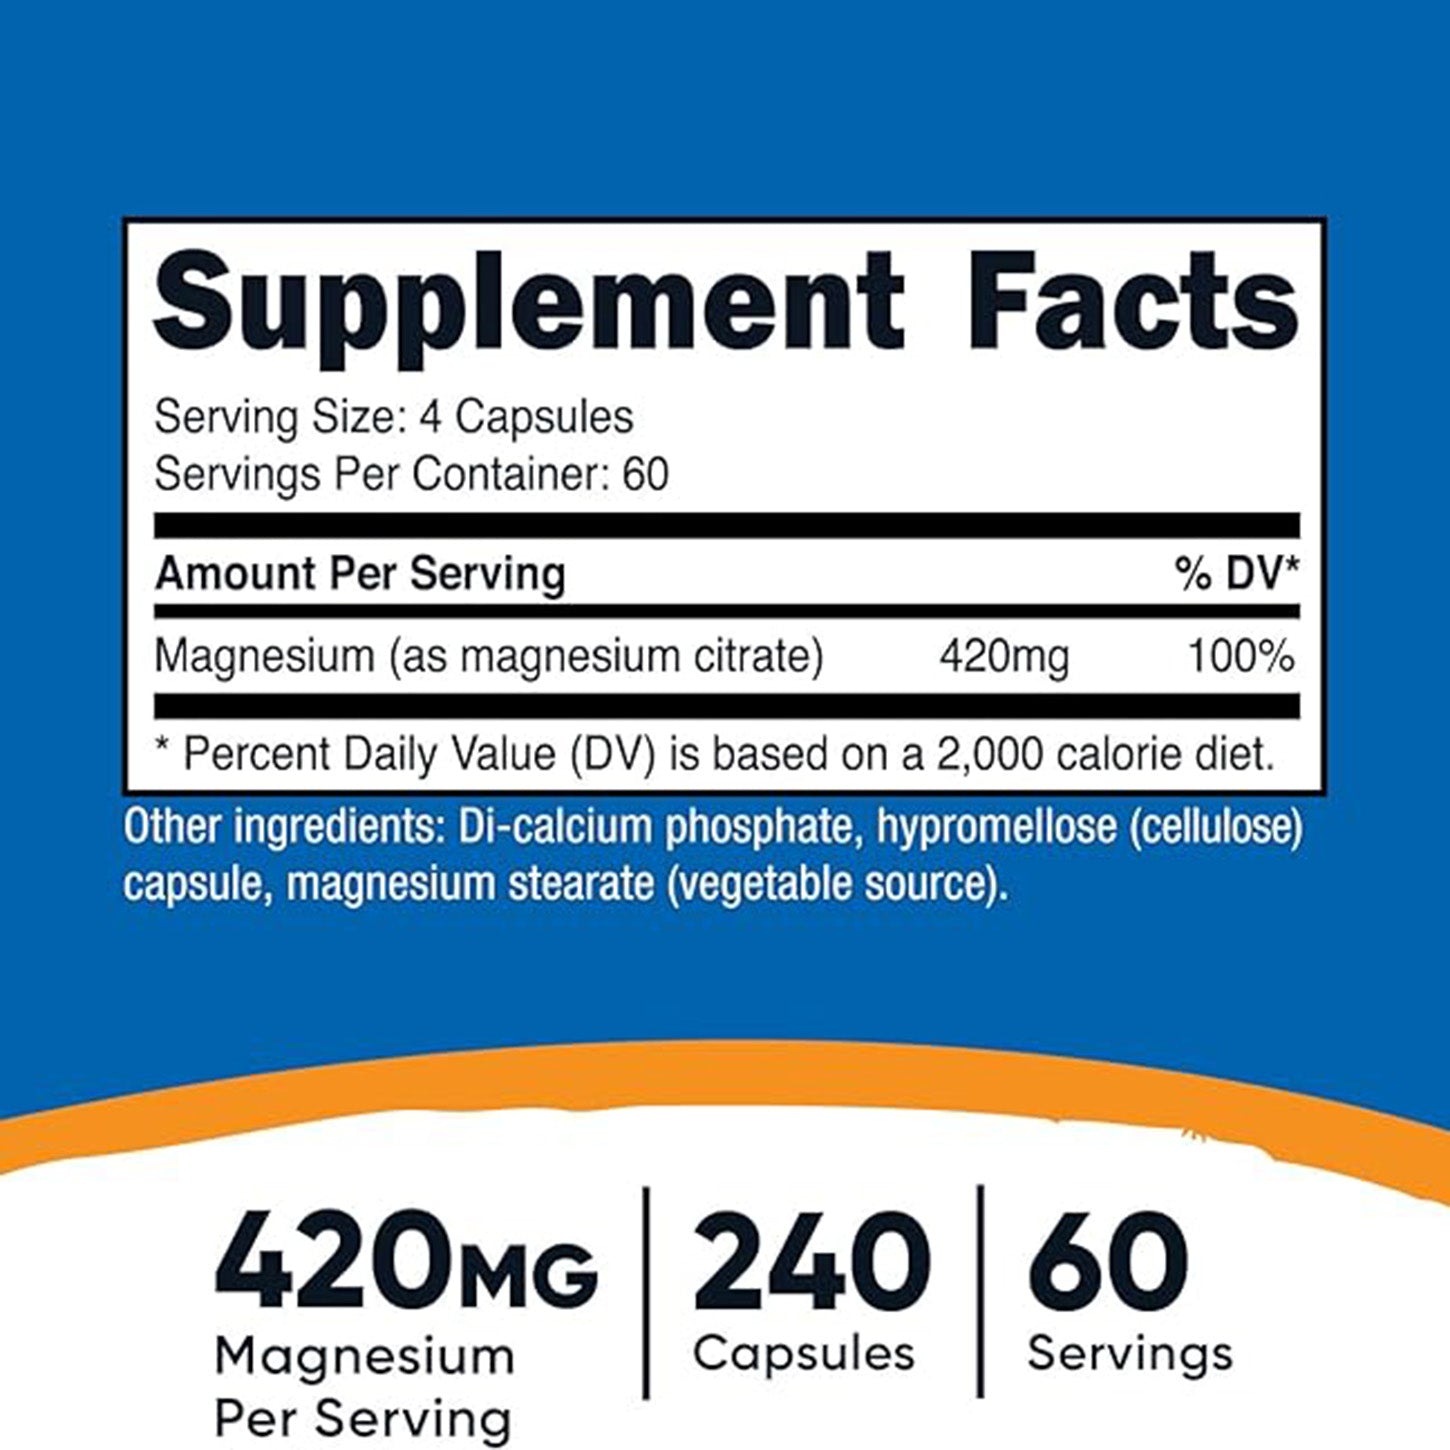 Nutricost Citrato de Magnesio: Apoyo Efectivo para la Salud Muscular y del Sistema Nervioso | ProHealth Shop [Panamá]